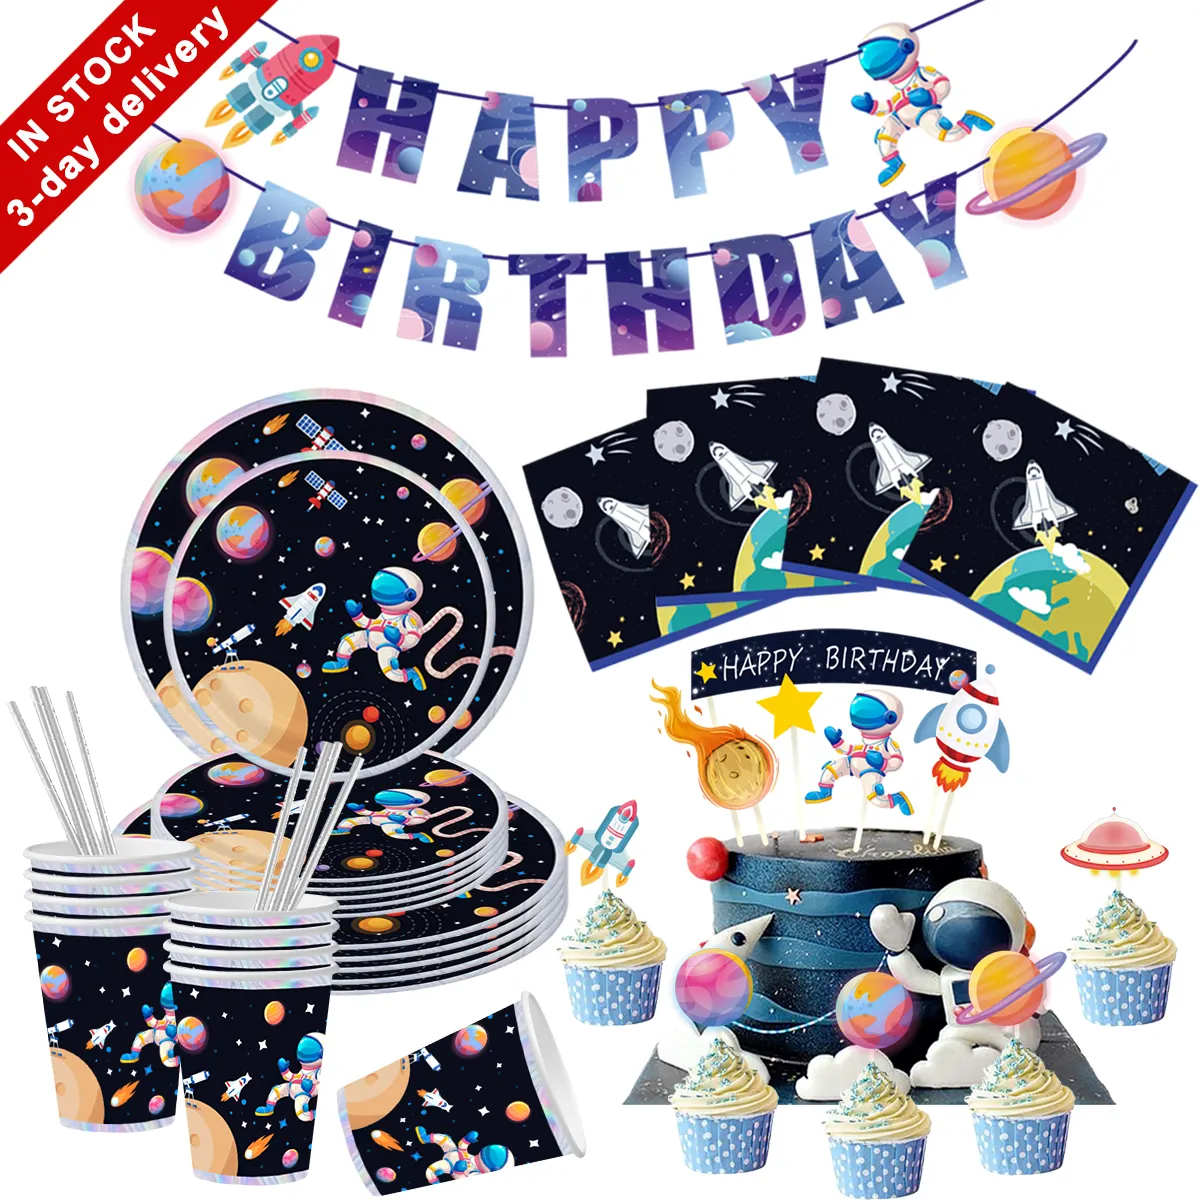 Nicro Space Astronaut Spaceman tema forniture per feste di compleanno per bambini decorazione per feste di compleanno Kit di stoviglie usa e getta